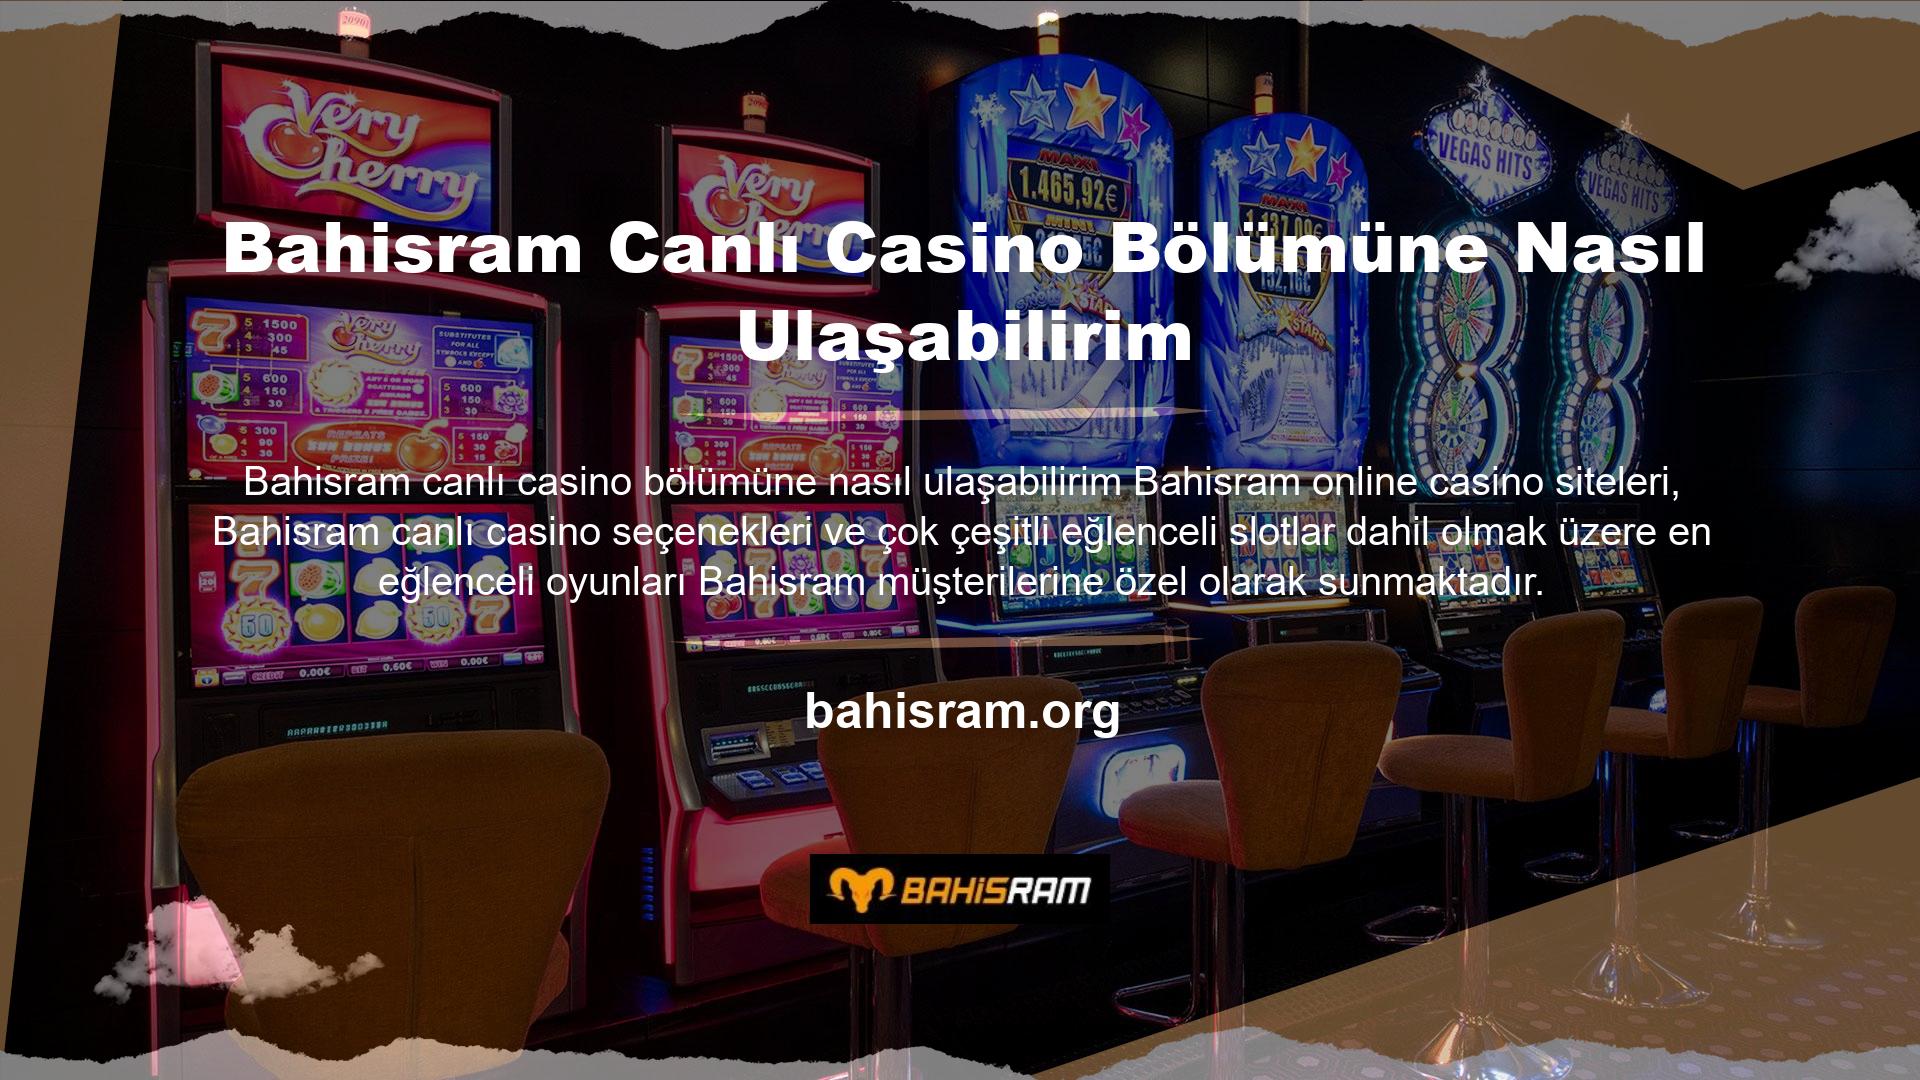 Bahisram yasadışı casino sitesinin canlı casino bölümüne girmek için yapmanız gereken aslında oldukça basit